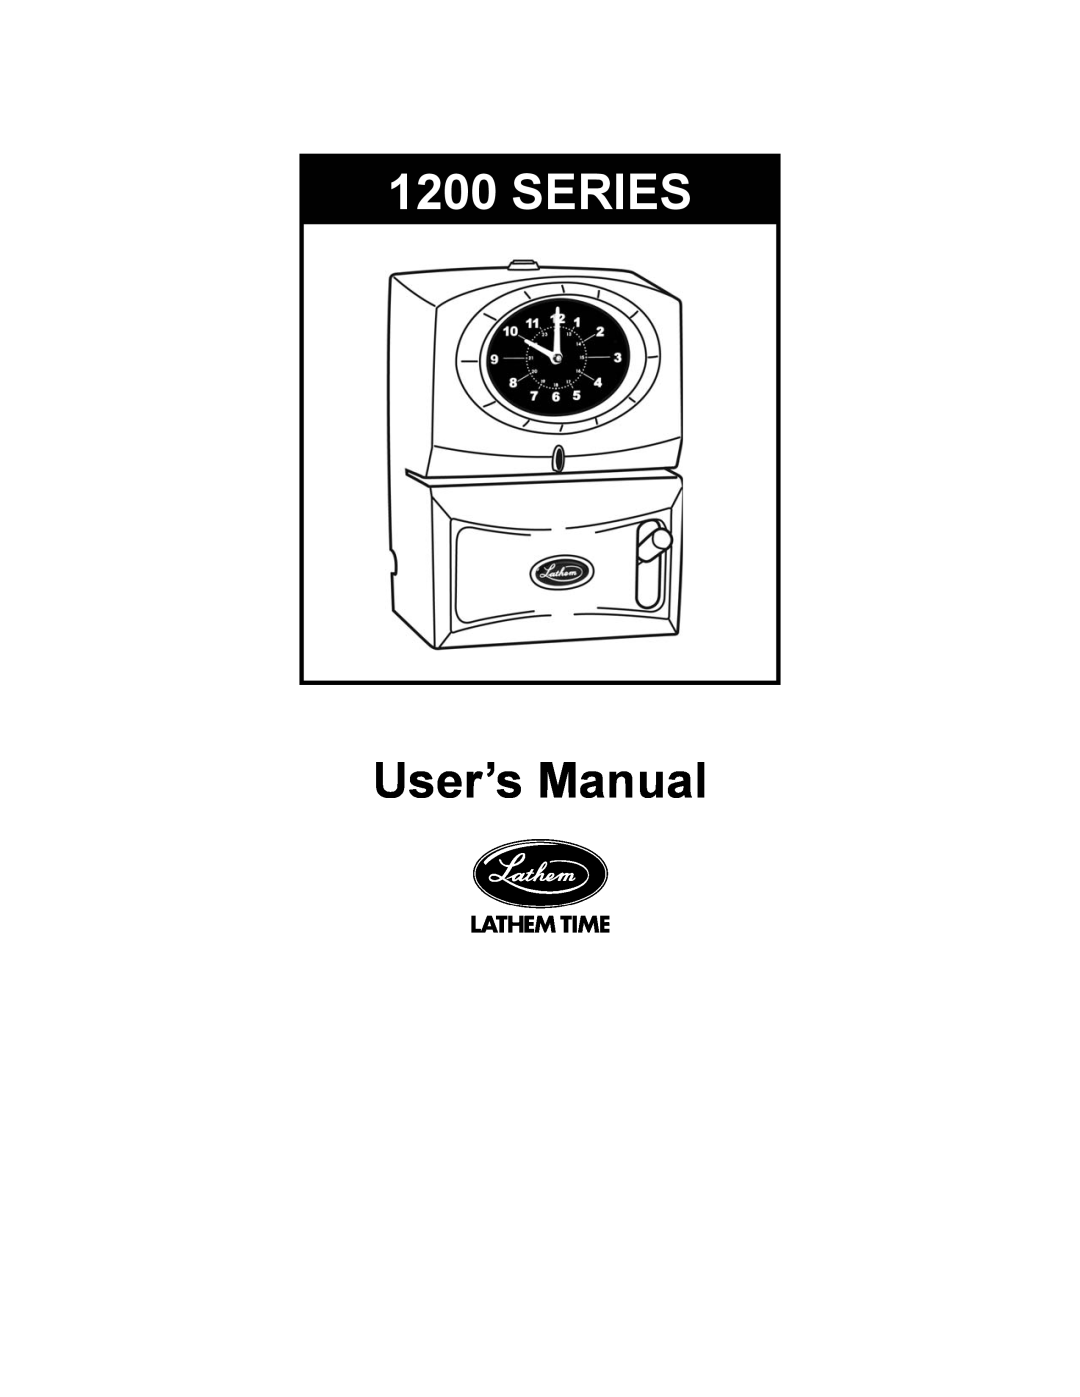 Lathem 1200 Series user manual User’s Manual 